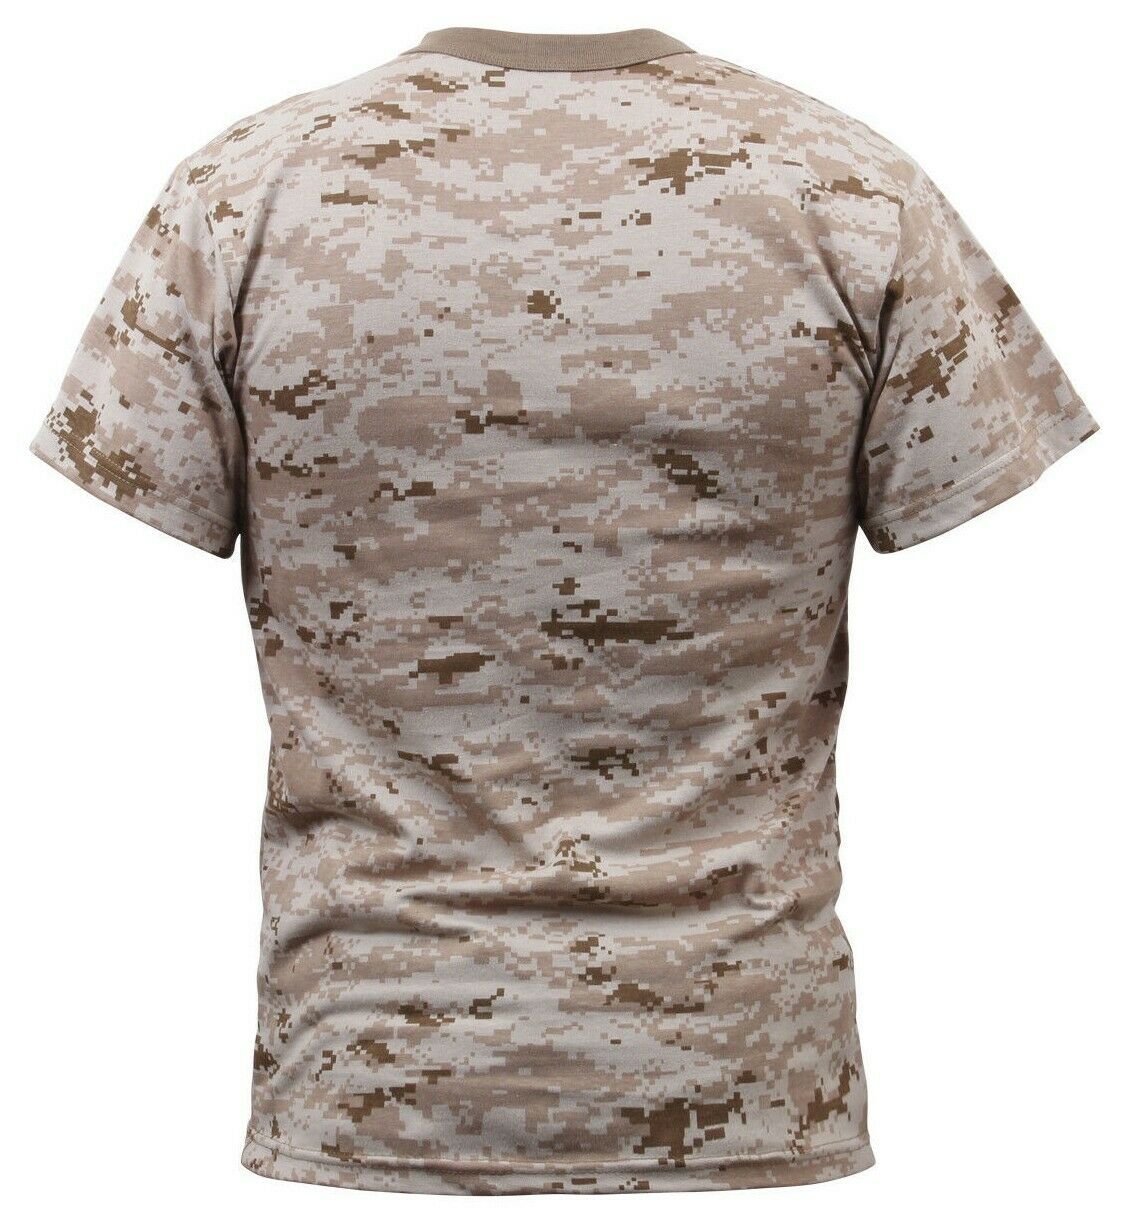 Rothco Digital Camo T-Shirt - Desert Digital Camo